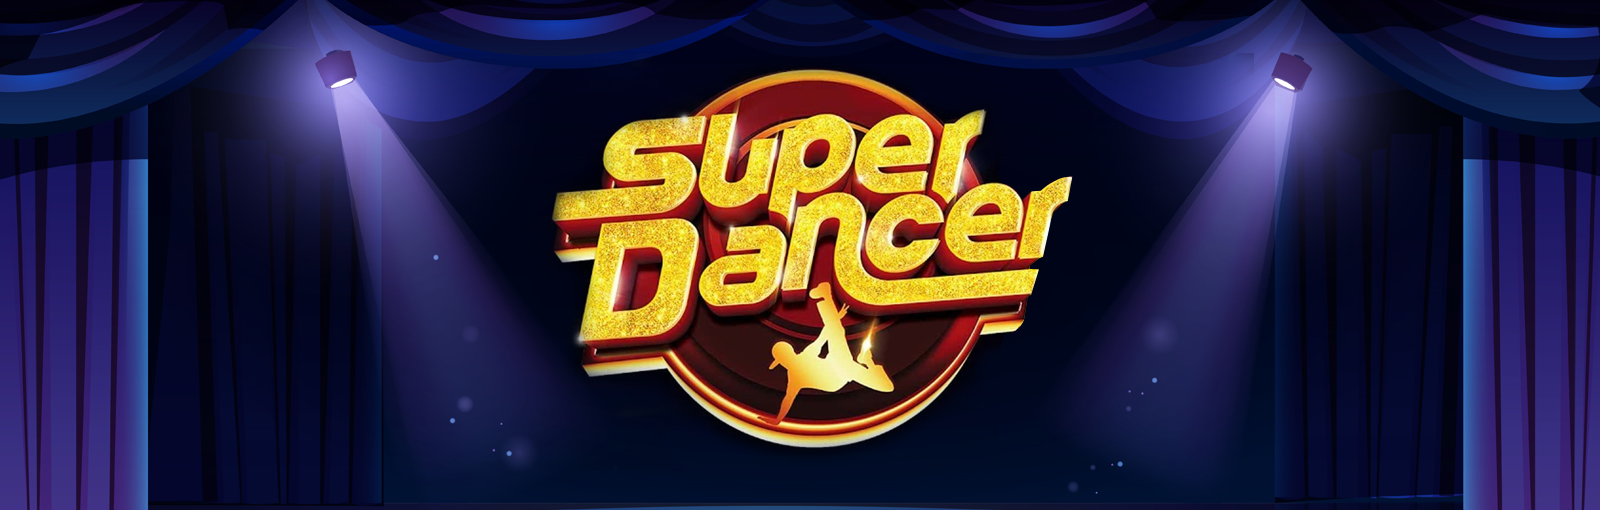 Super Dancer